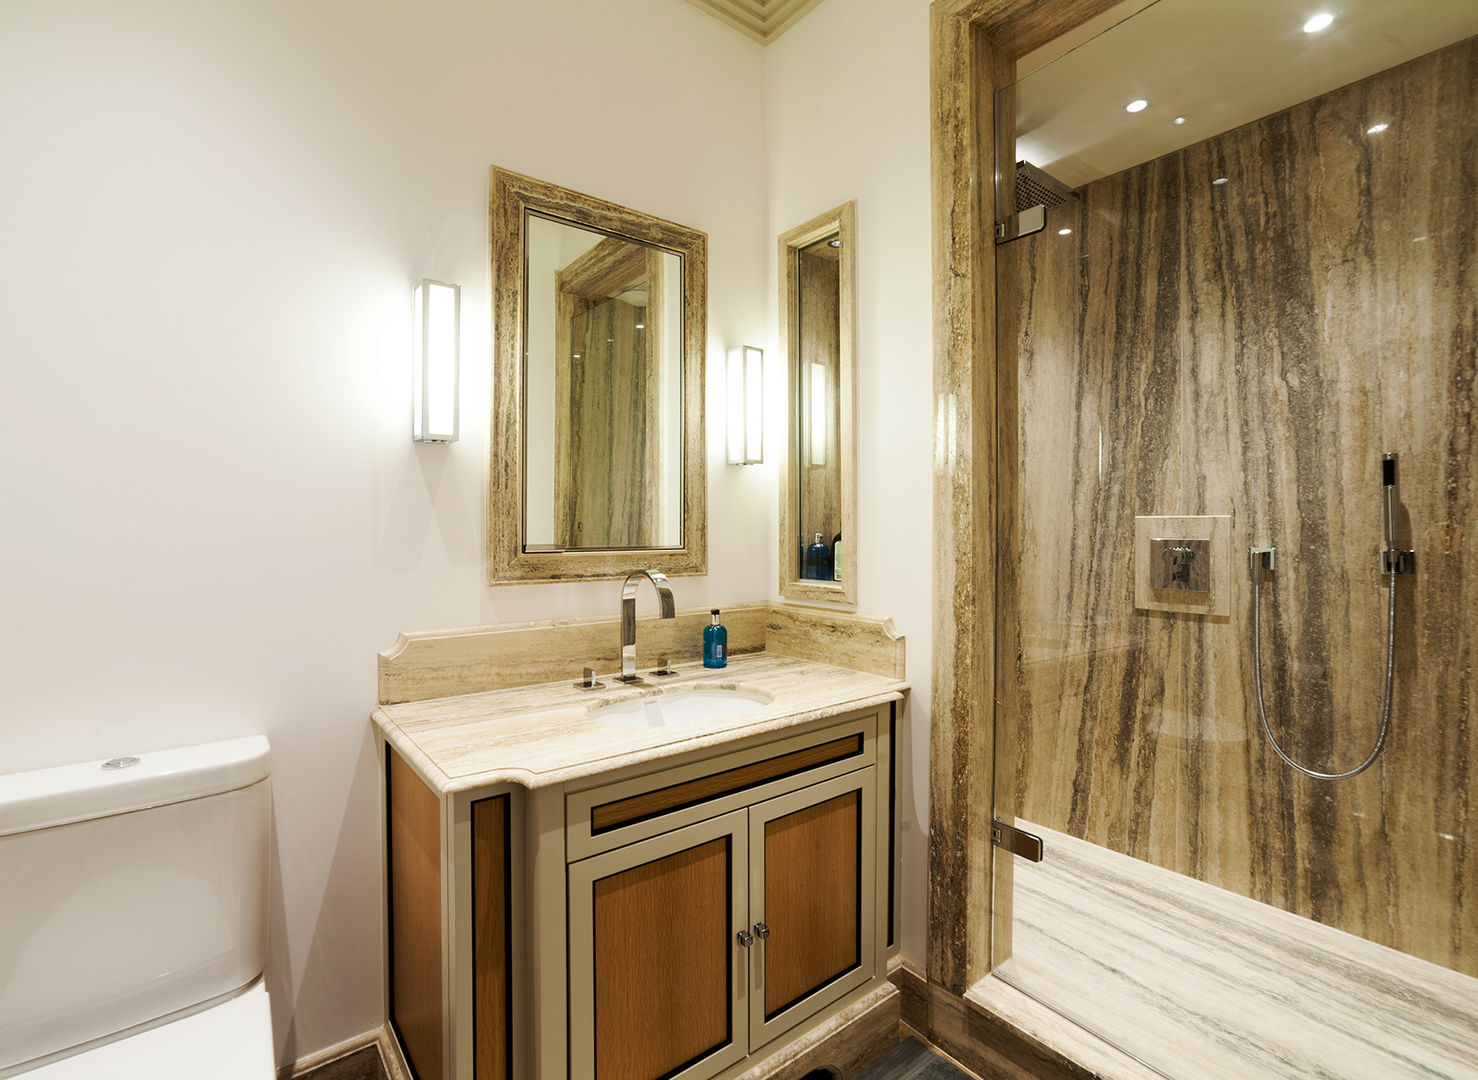 Bathroom Prestige Architects By Marco Braghiroli Ванная комната в стиле модерн bathroom,modern,lighting